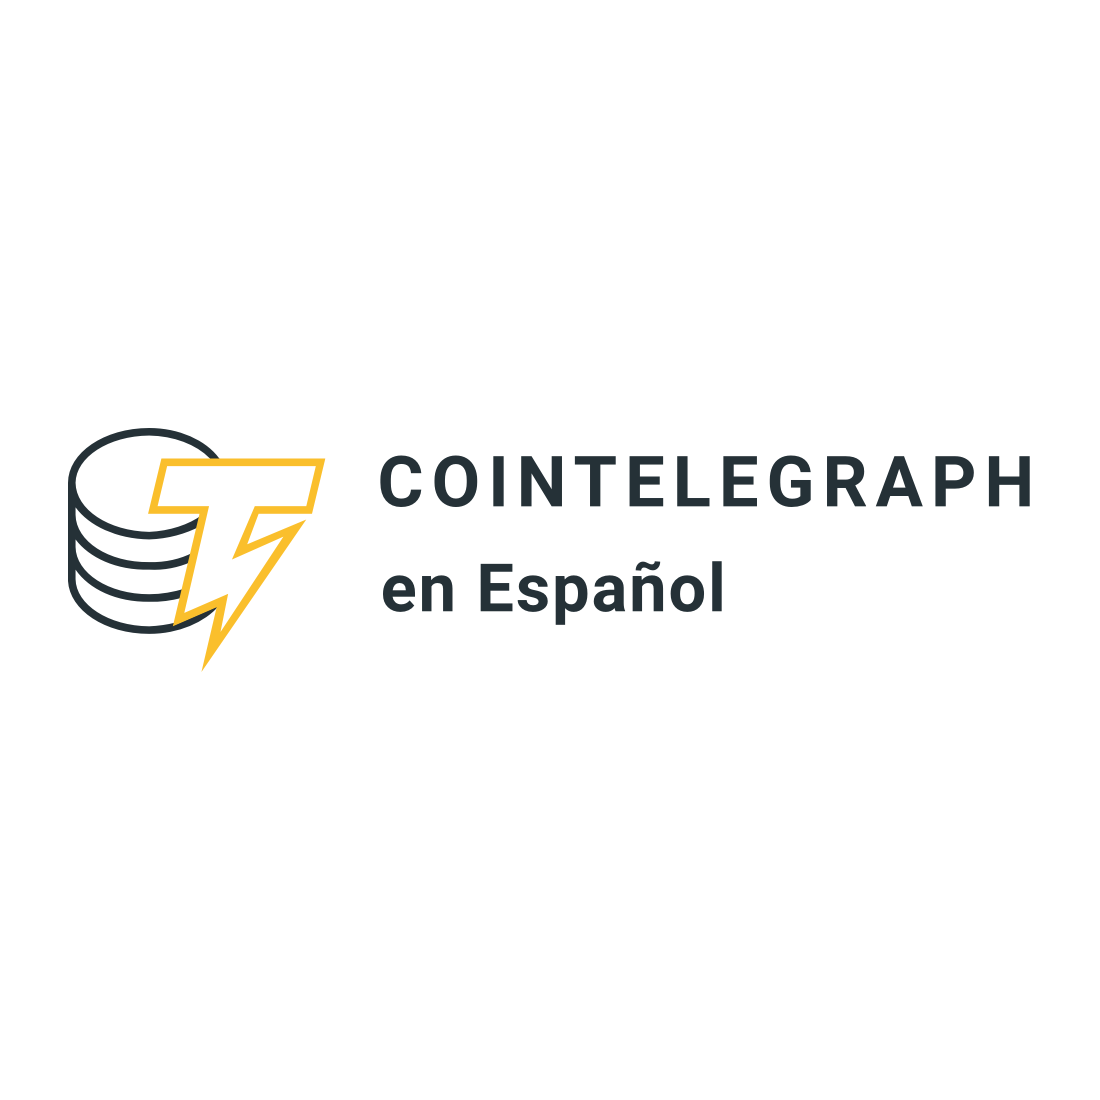 COINTELEGRAPH